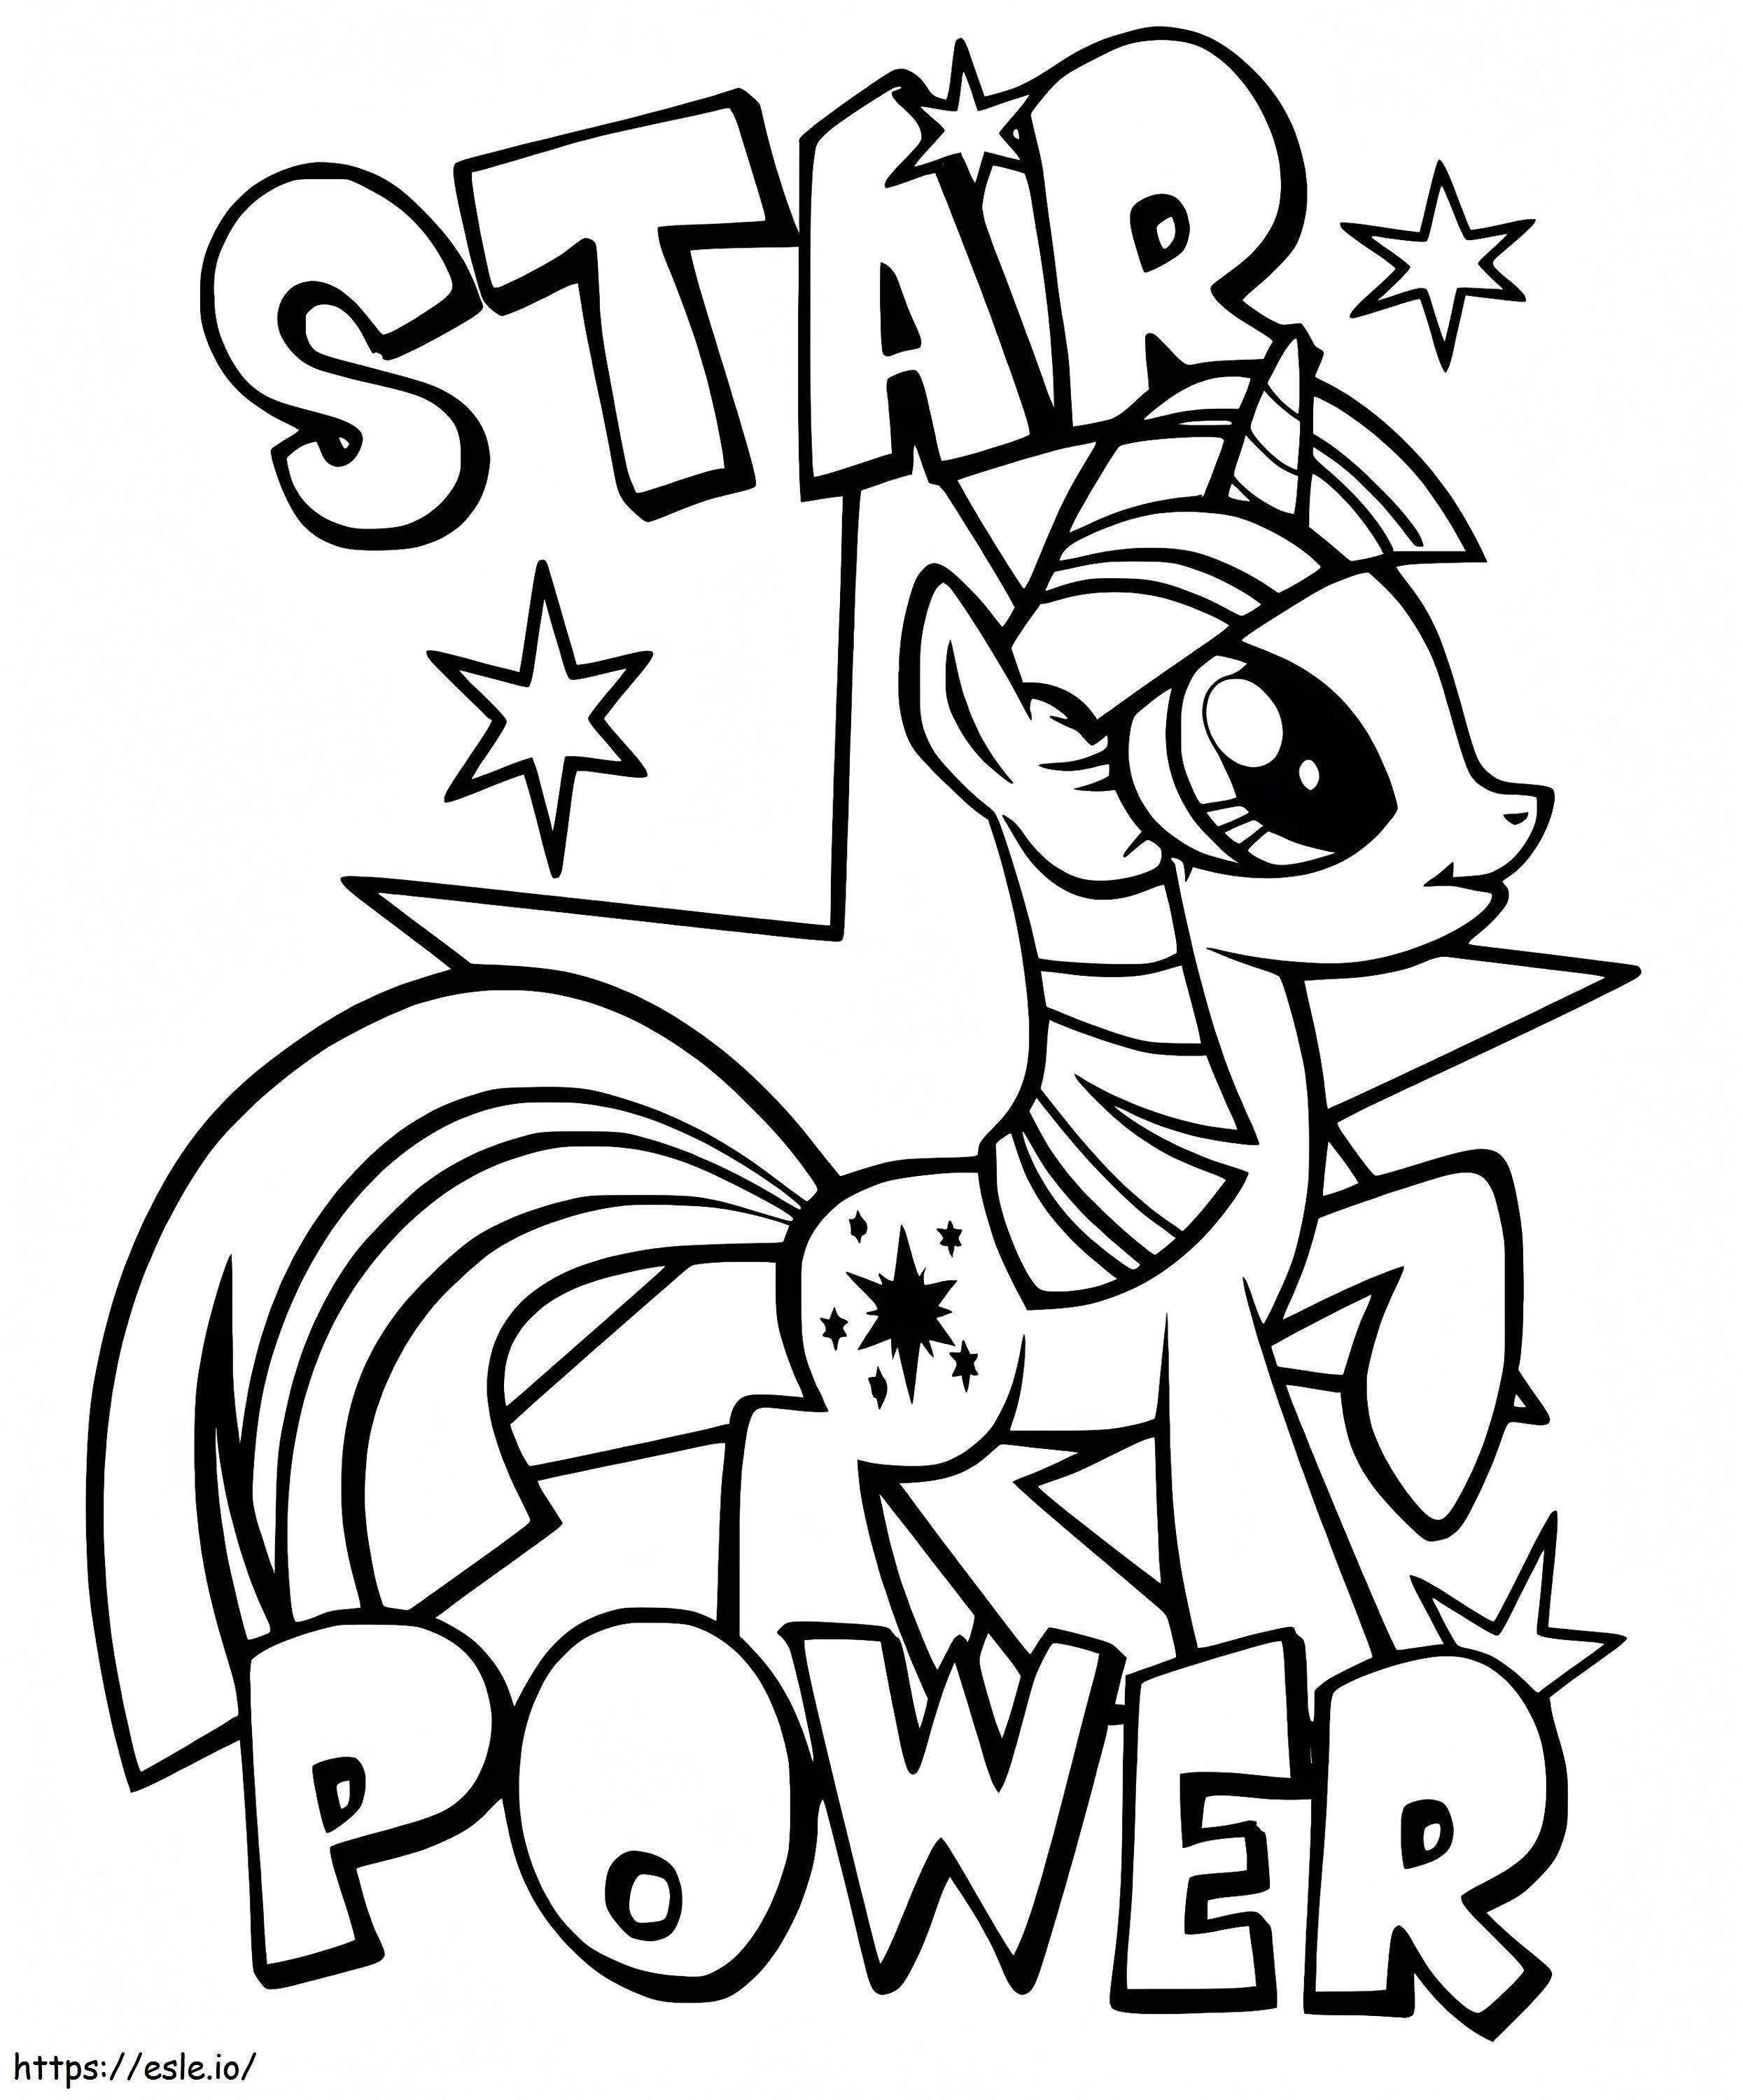 Star Power Twilight Sparkle ausmalbilder